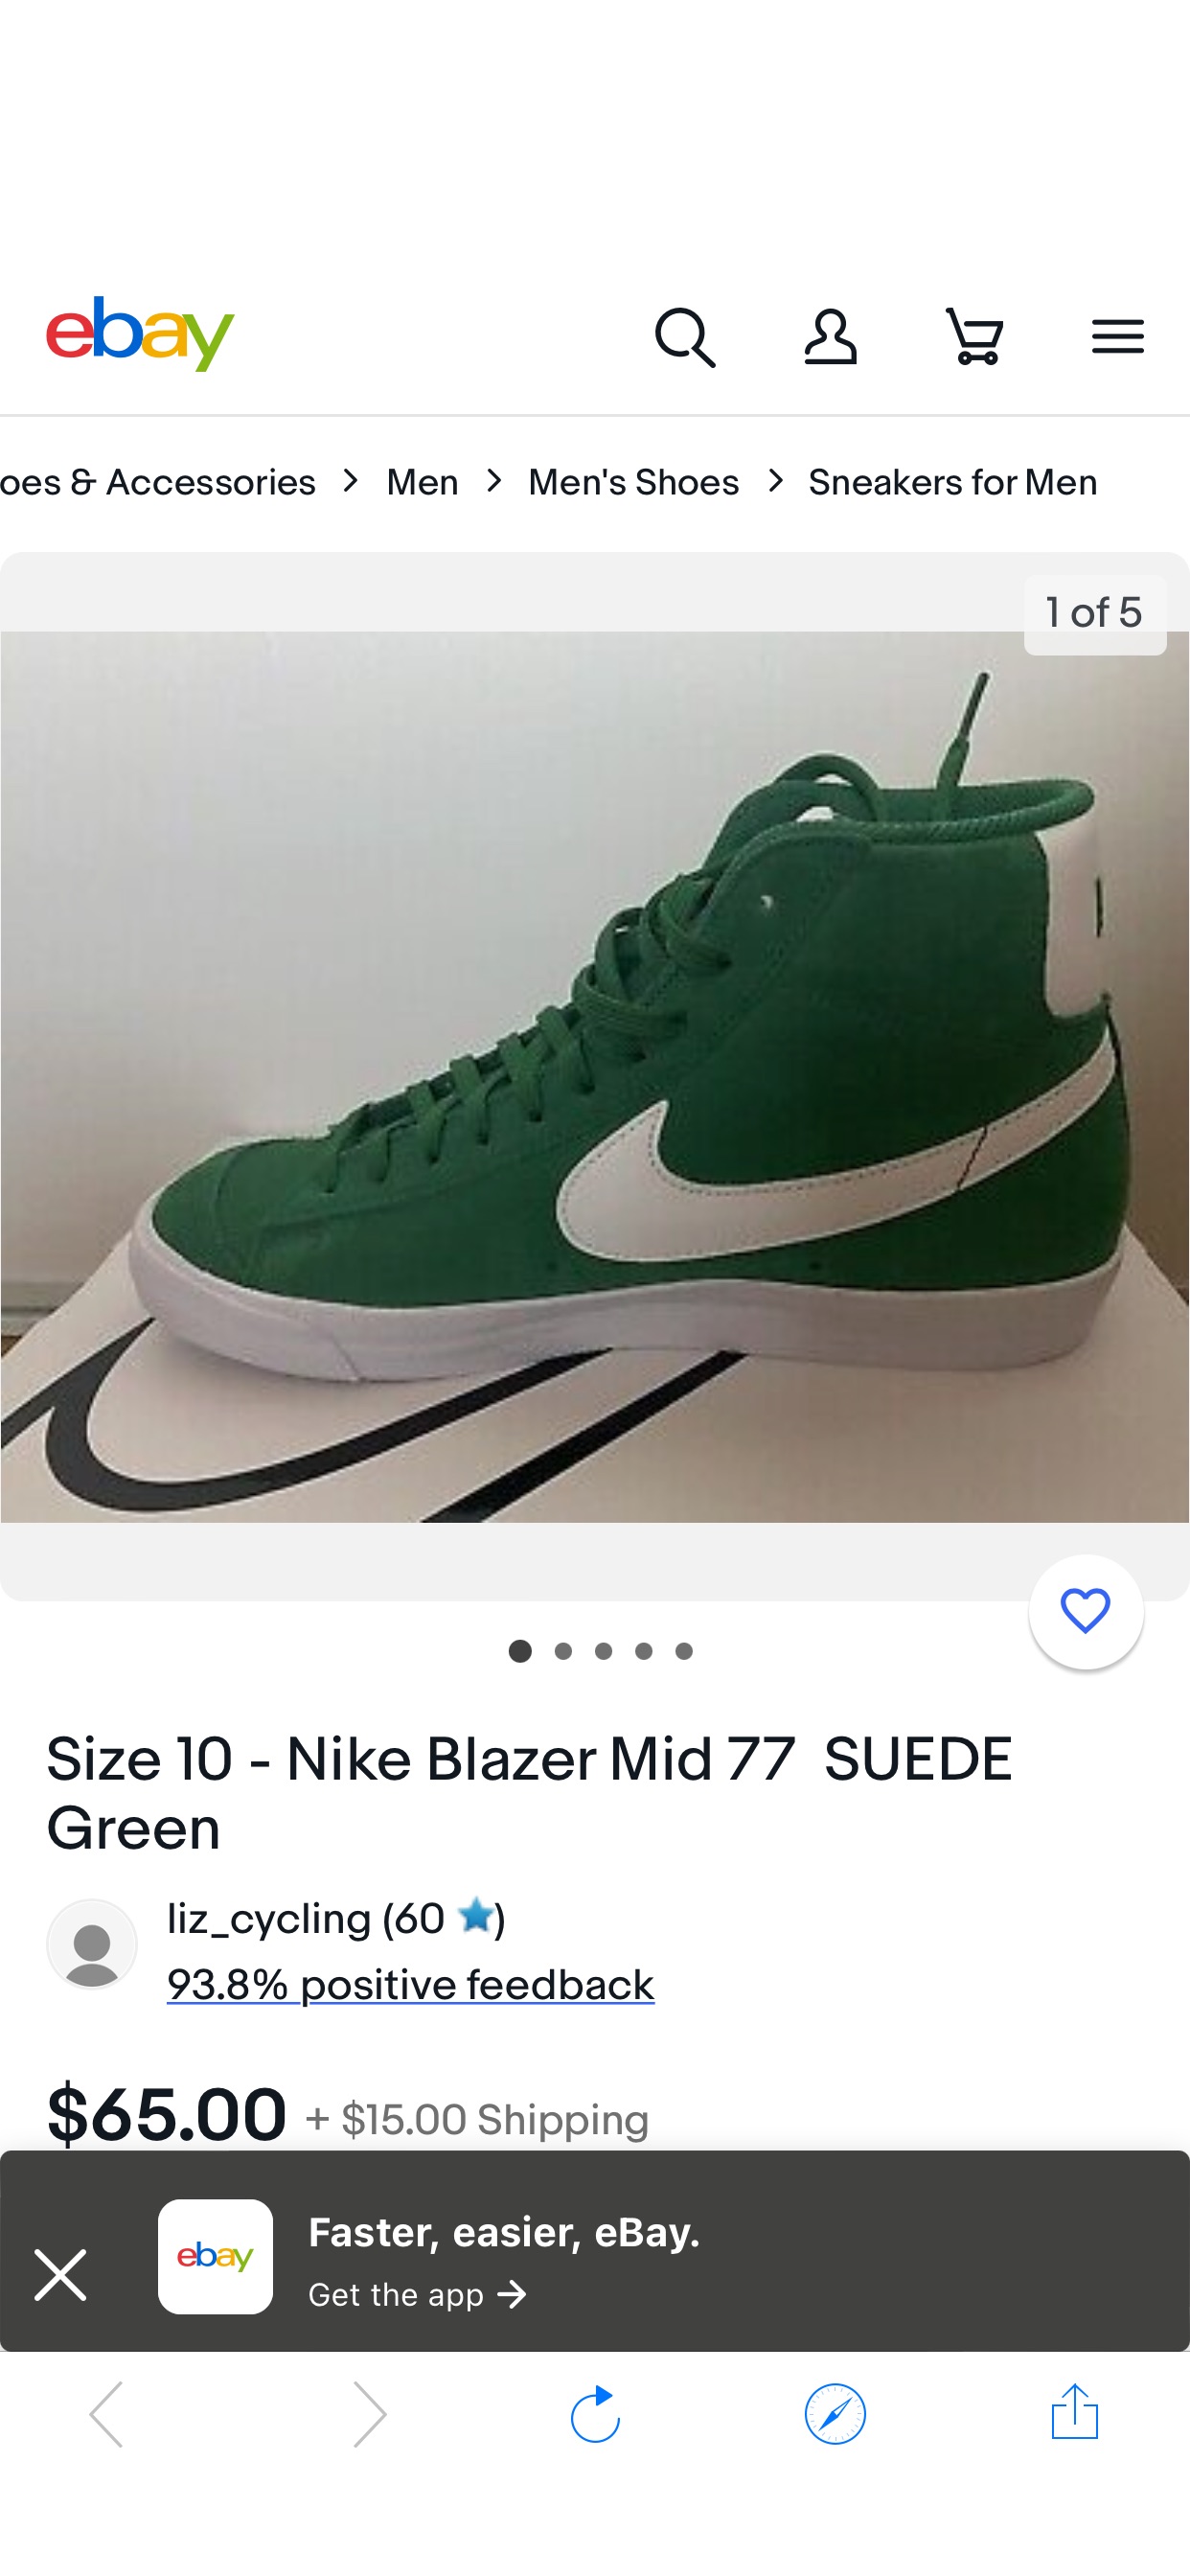 Size 10 - Nike Blazer Mid 77 SUEDE Green | eBay